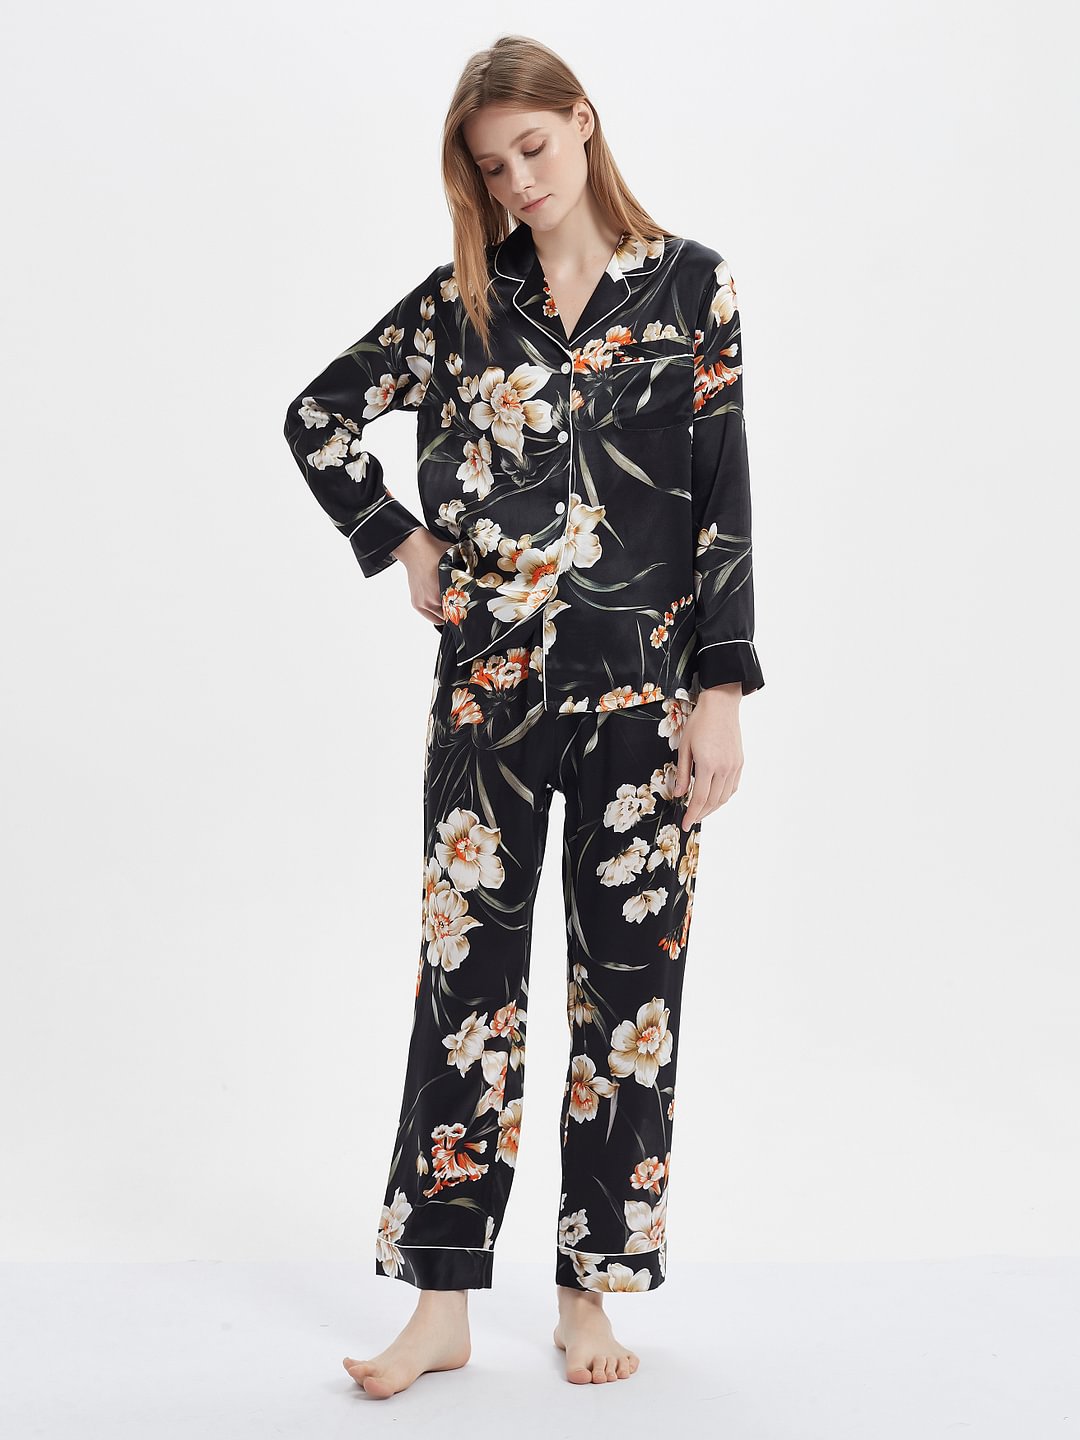 Printed Real Silk Pajama Set Women's Style Black